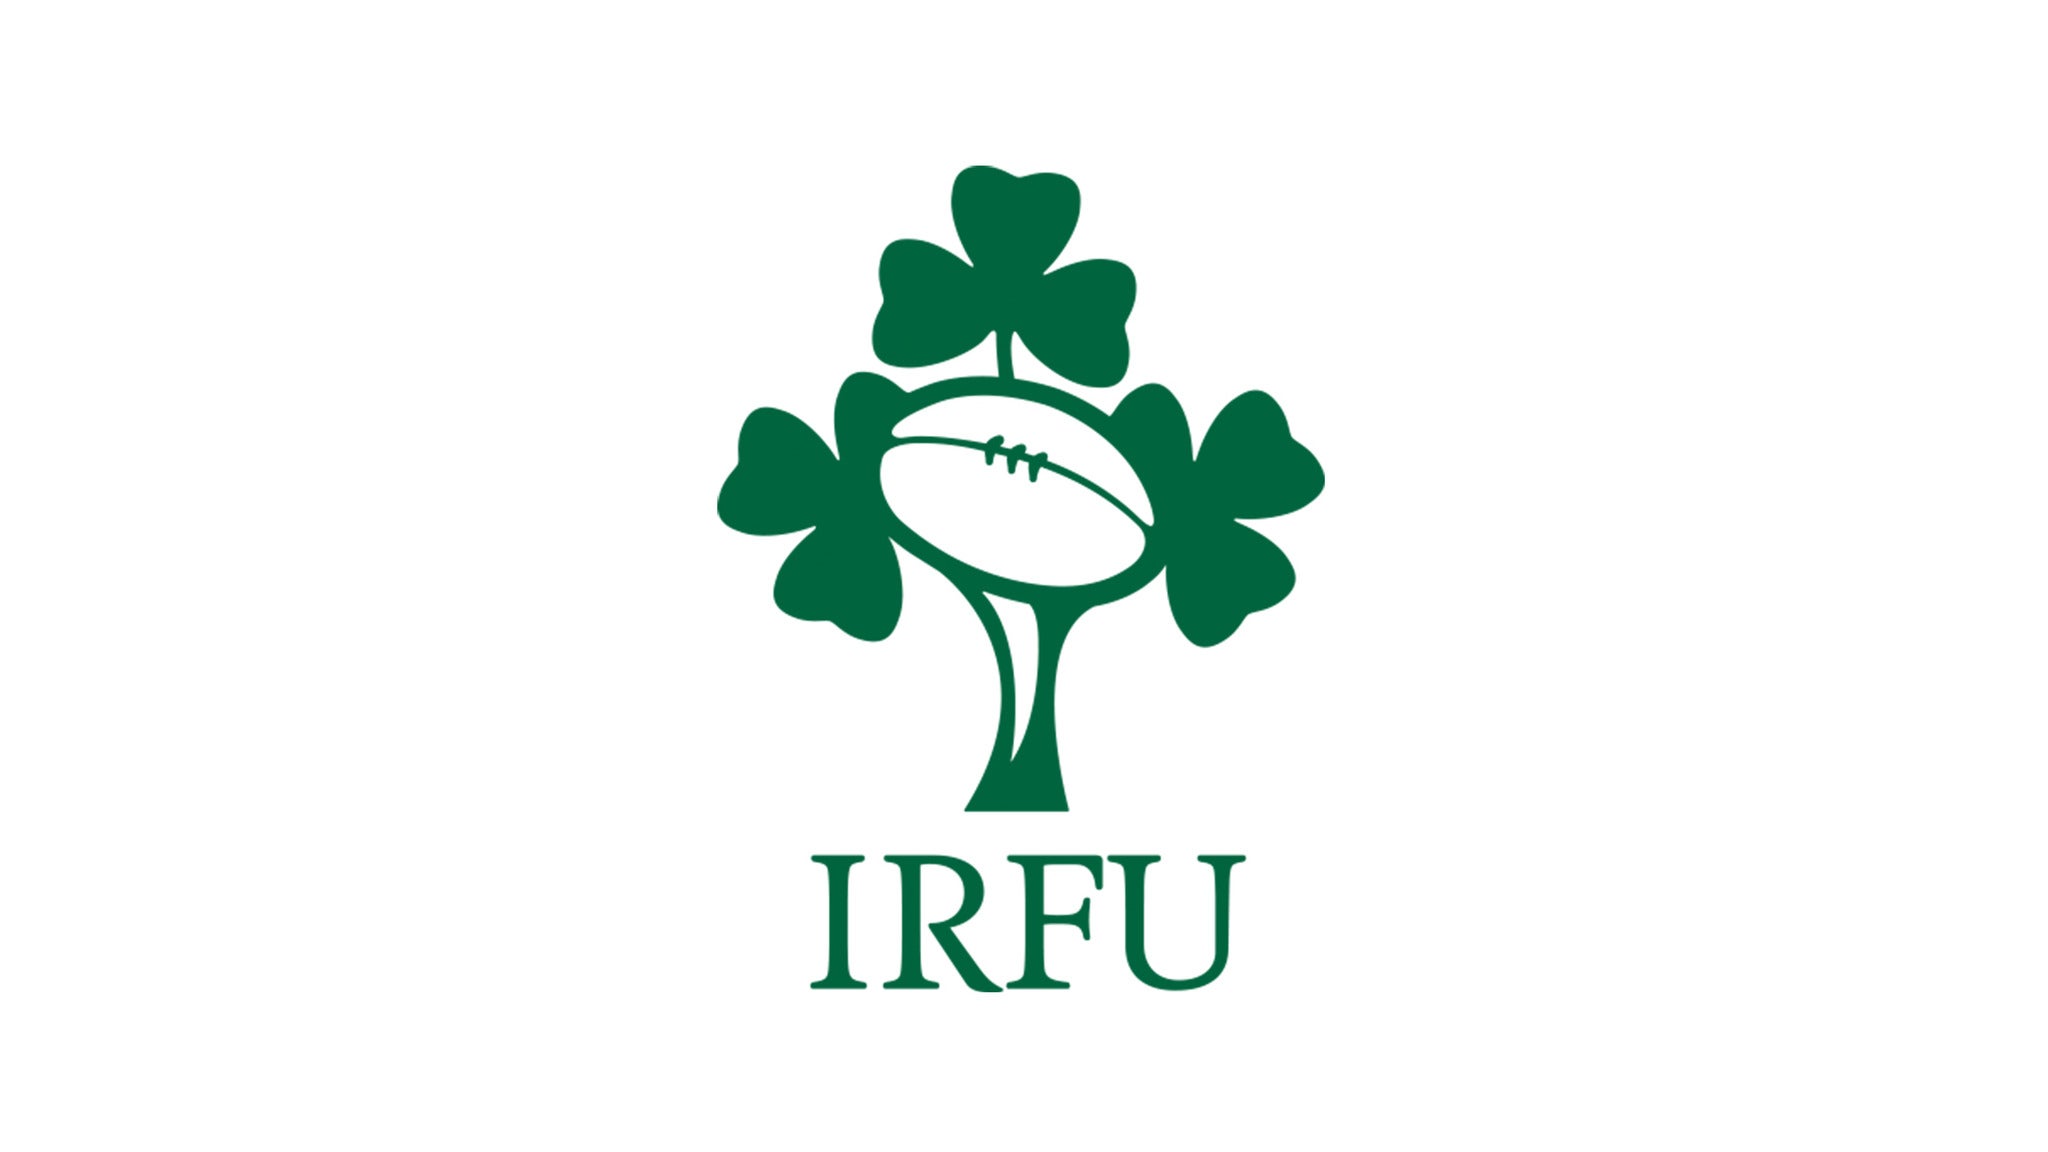 Irish Rugby Open Training Session in Dublin promo photo for Aviva presale offer code